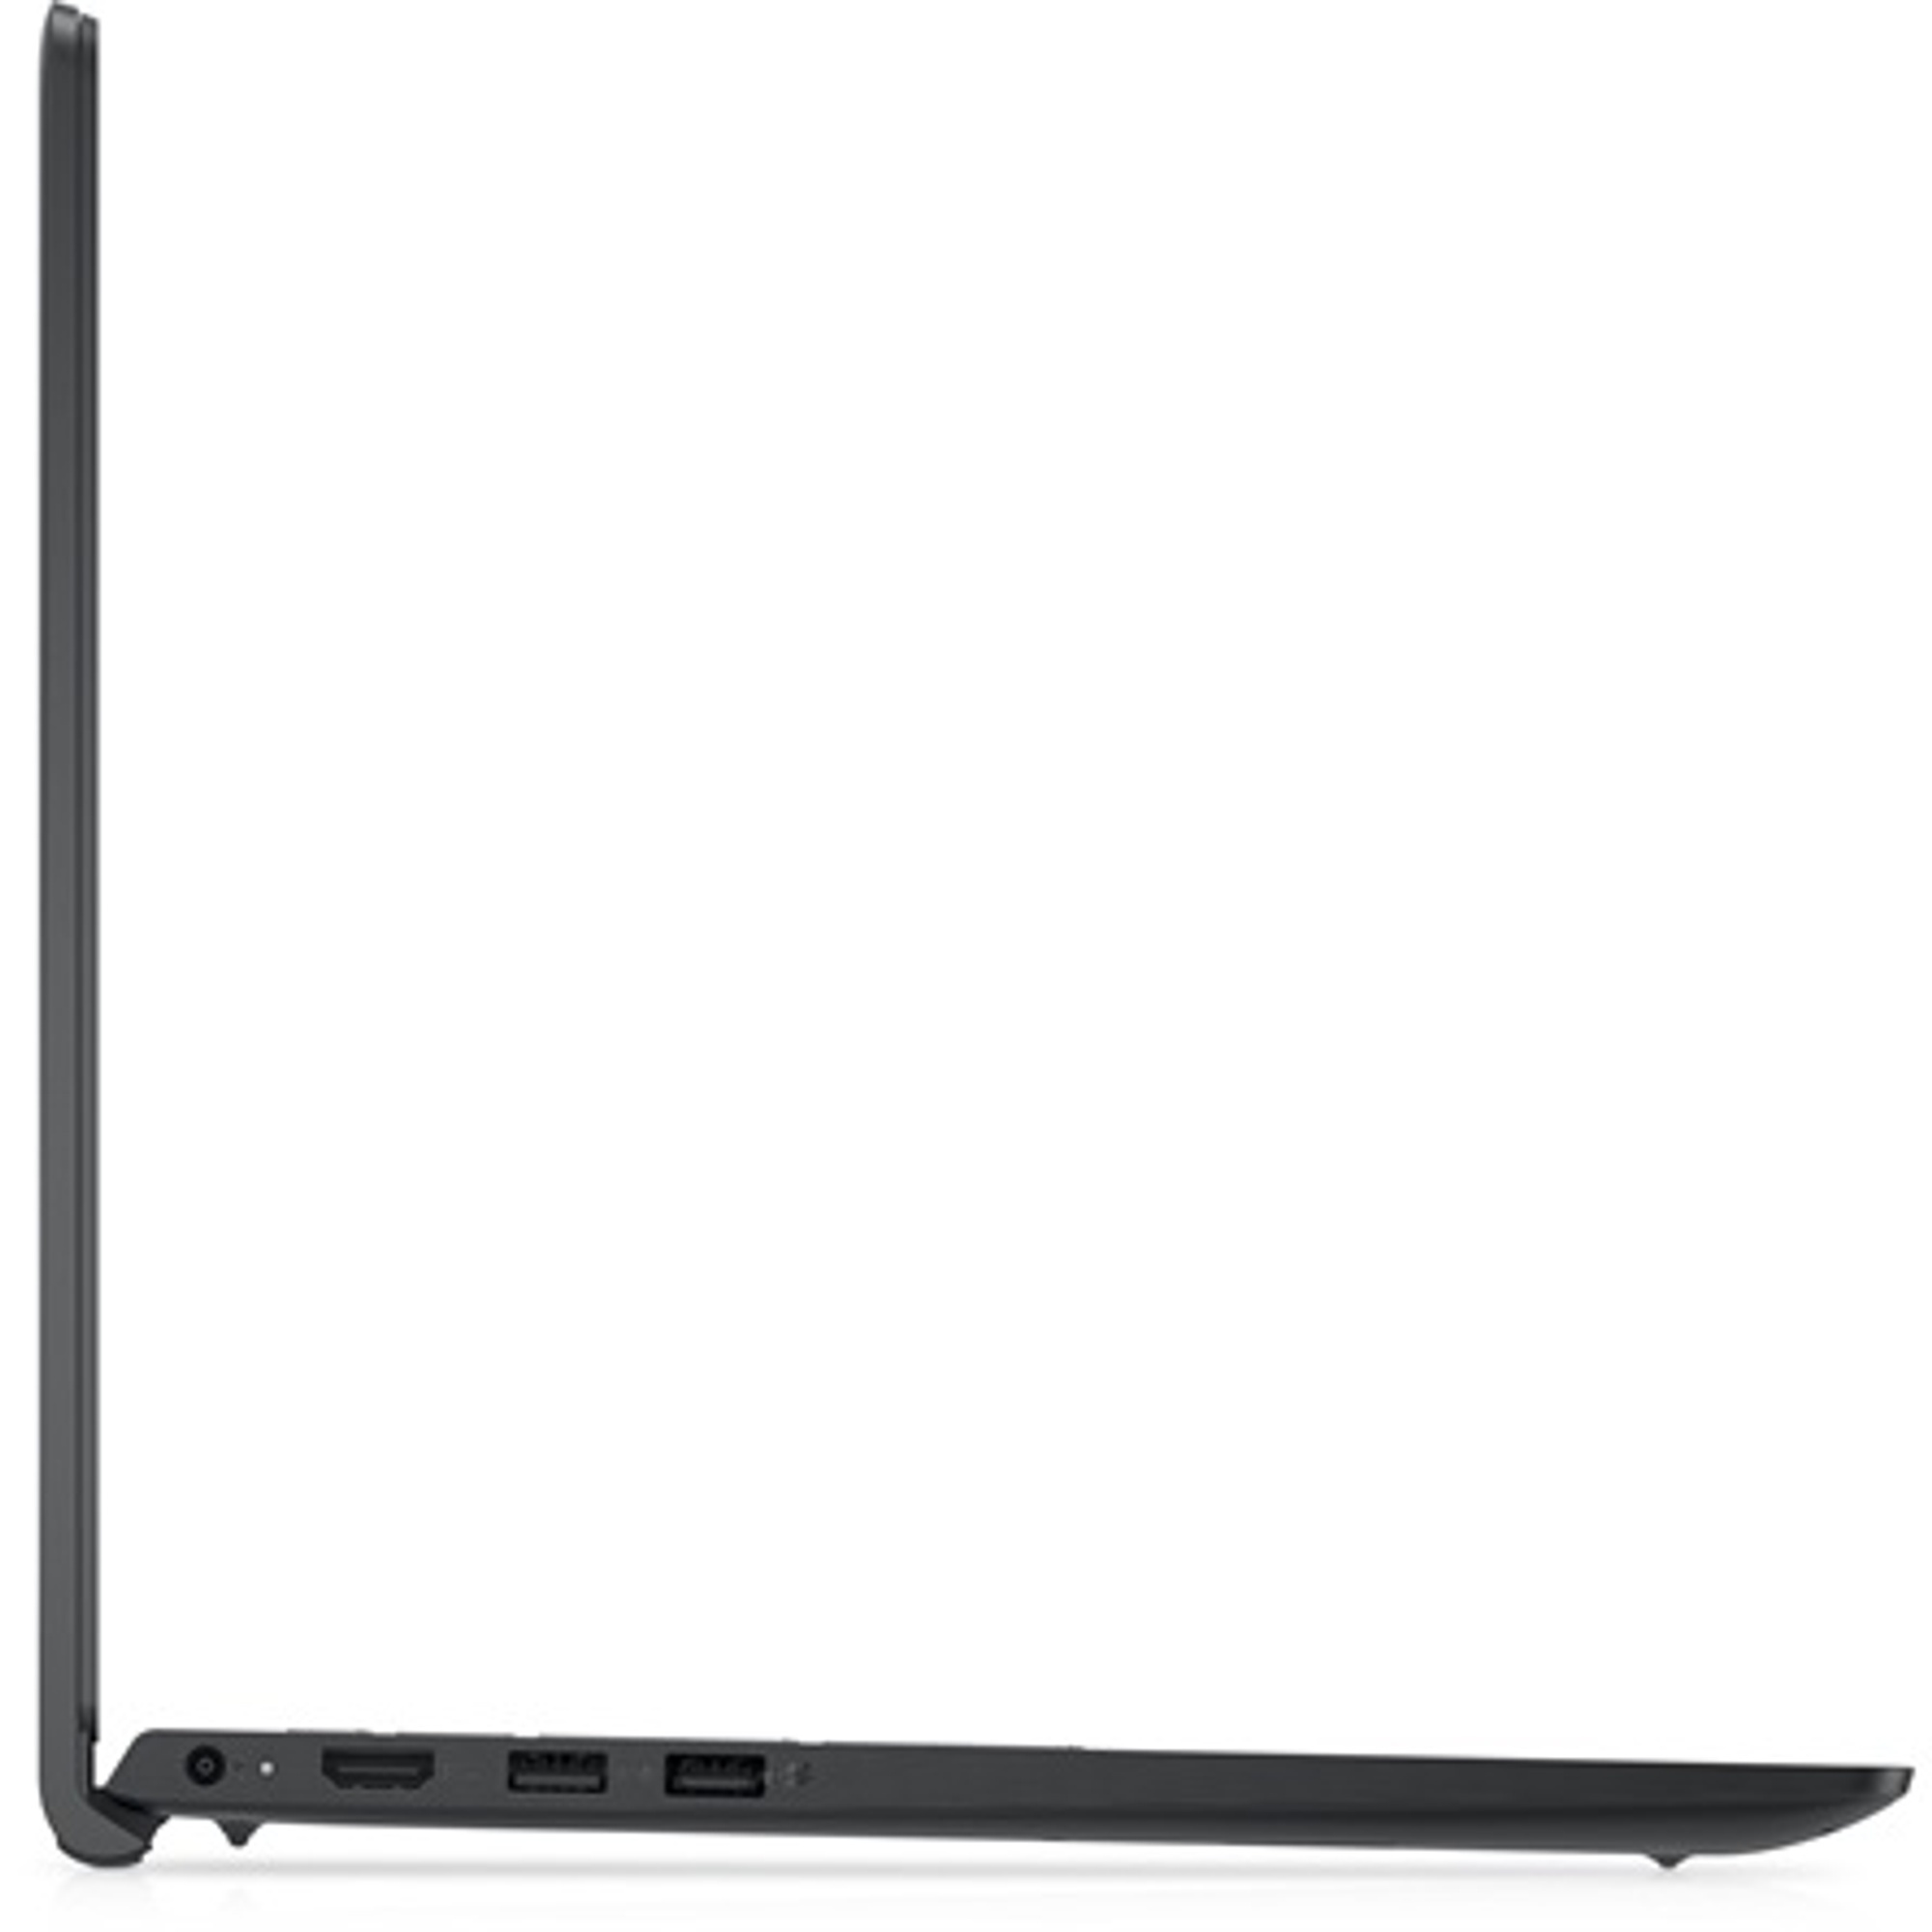 DELL V3520-17 Laptop / Notebook 3